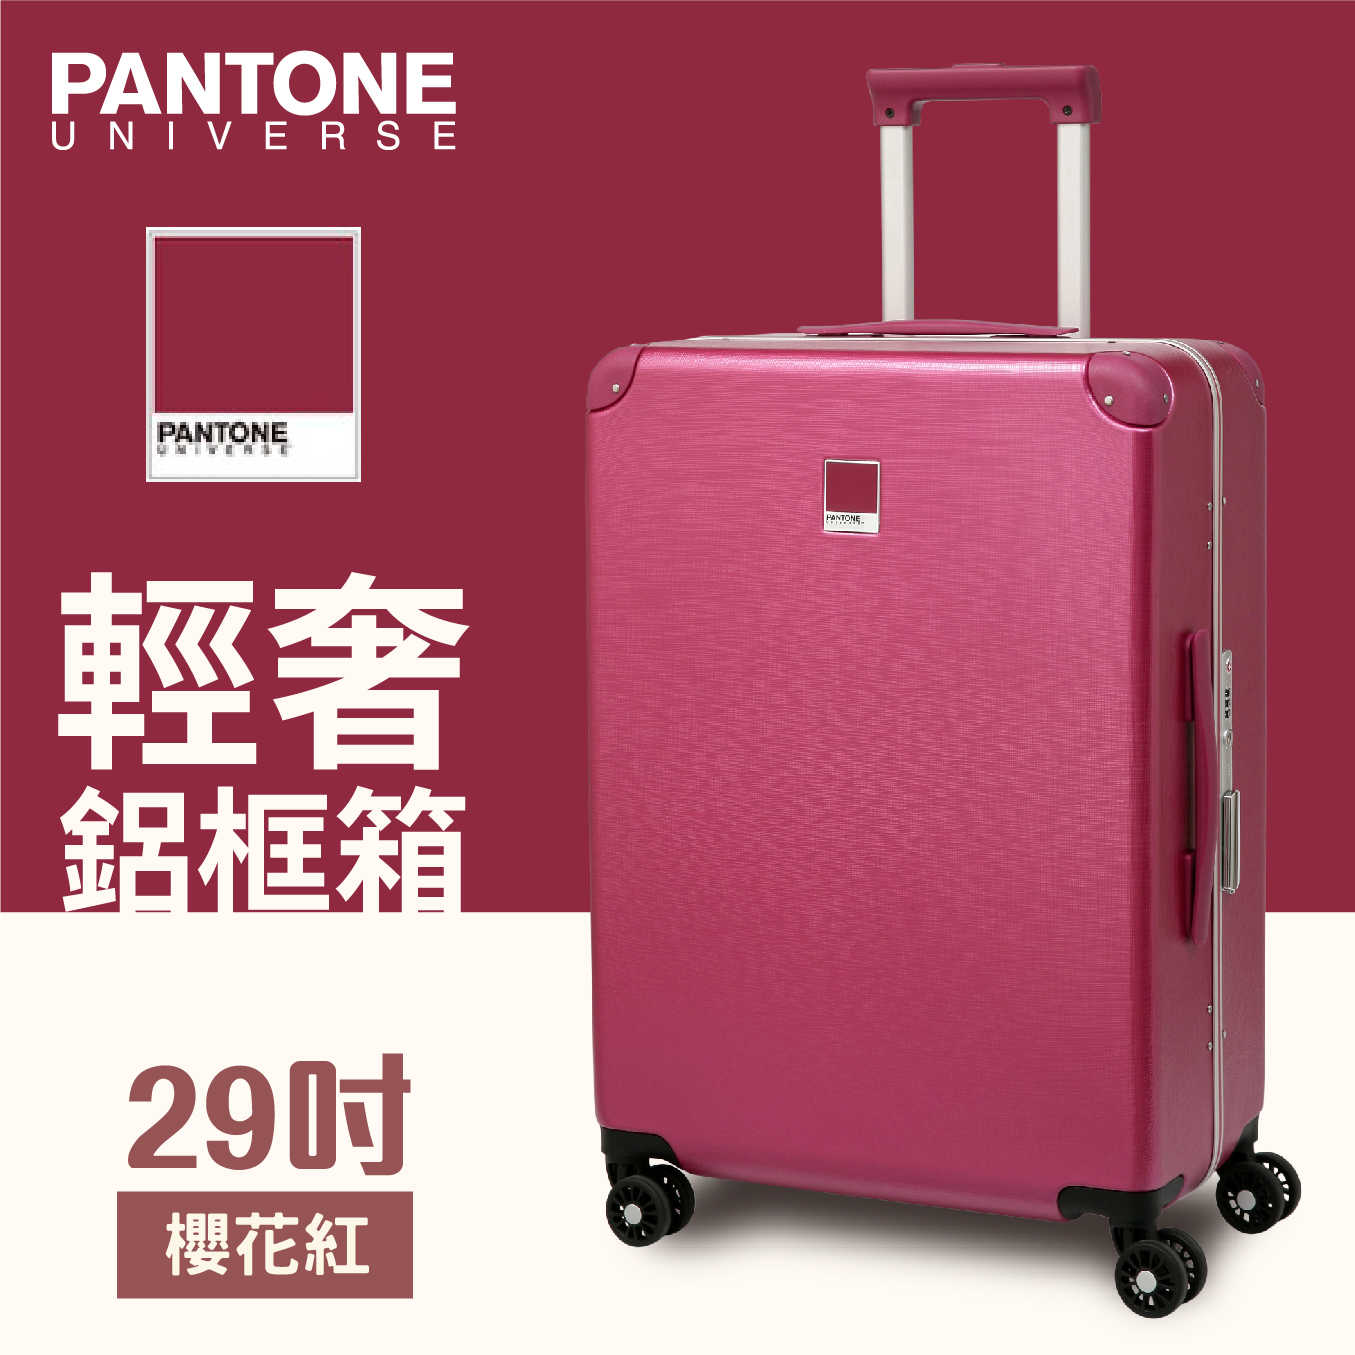 PANTONE 輕奢鋁框 行李箱 獨家聯名款 台灣限定旅行箱 (藍/紅) 29吋